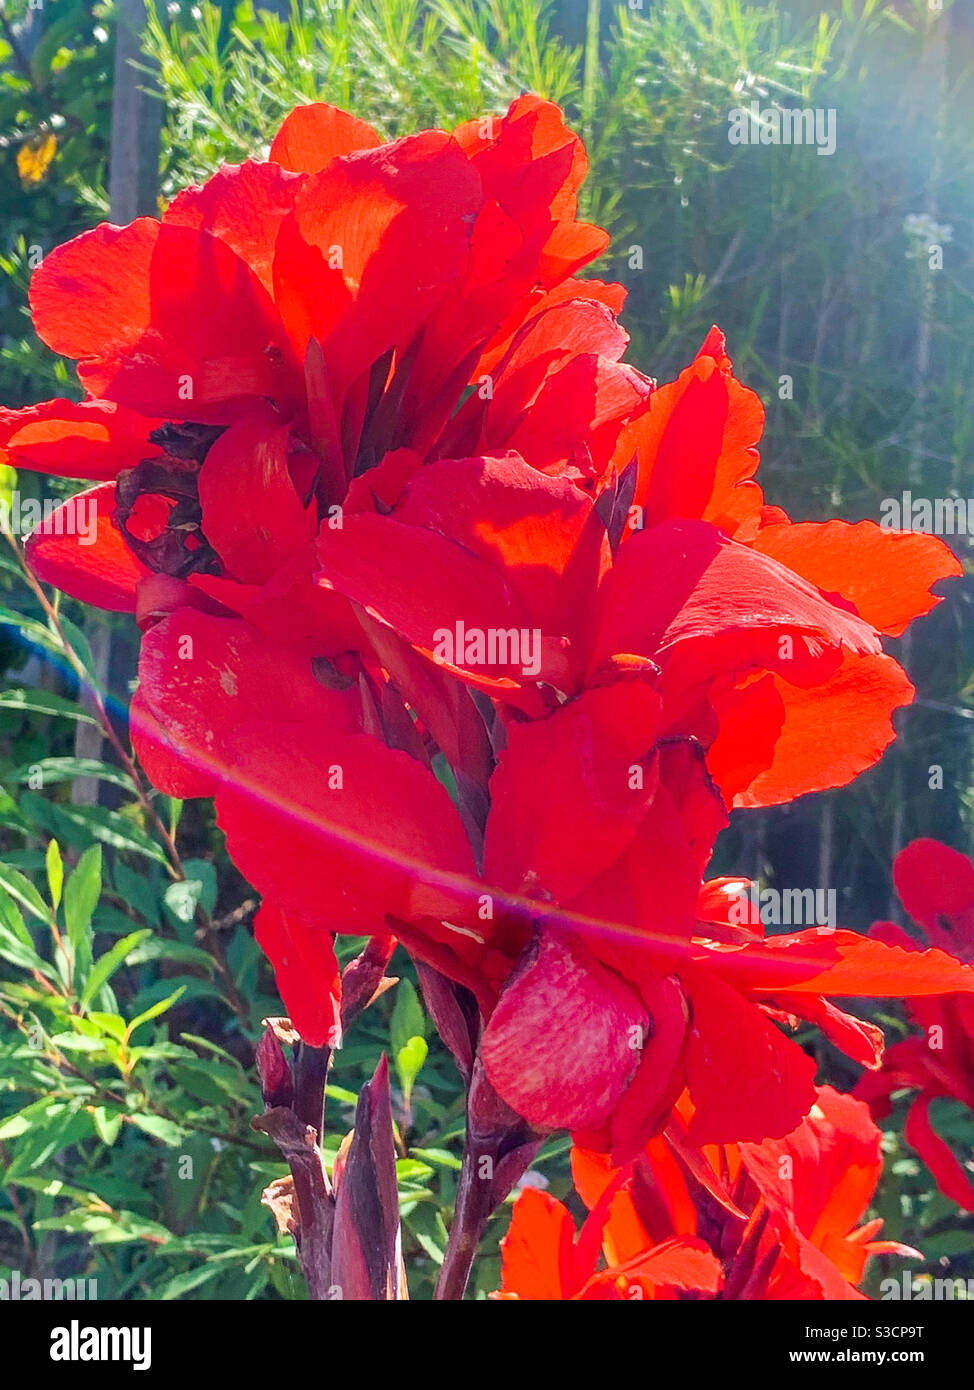 Magnifique Canna Lilies rouge flamboyant dans un jardin côtier, illuminé par le soleil qui brille et brille brillamment Banque D'Images